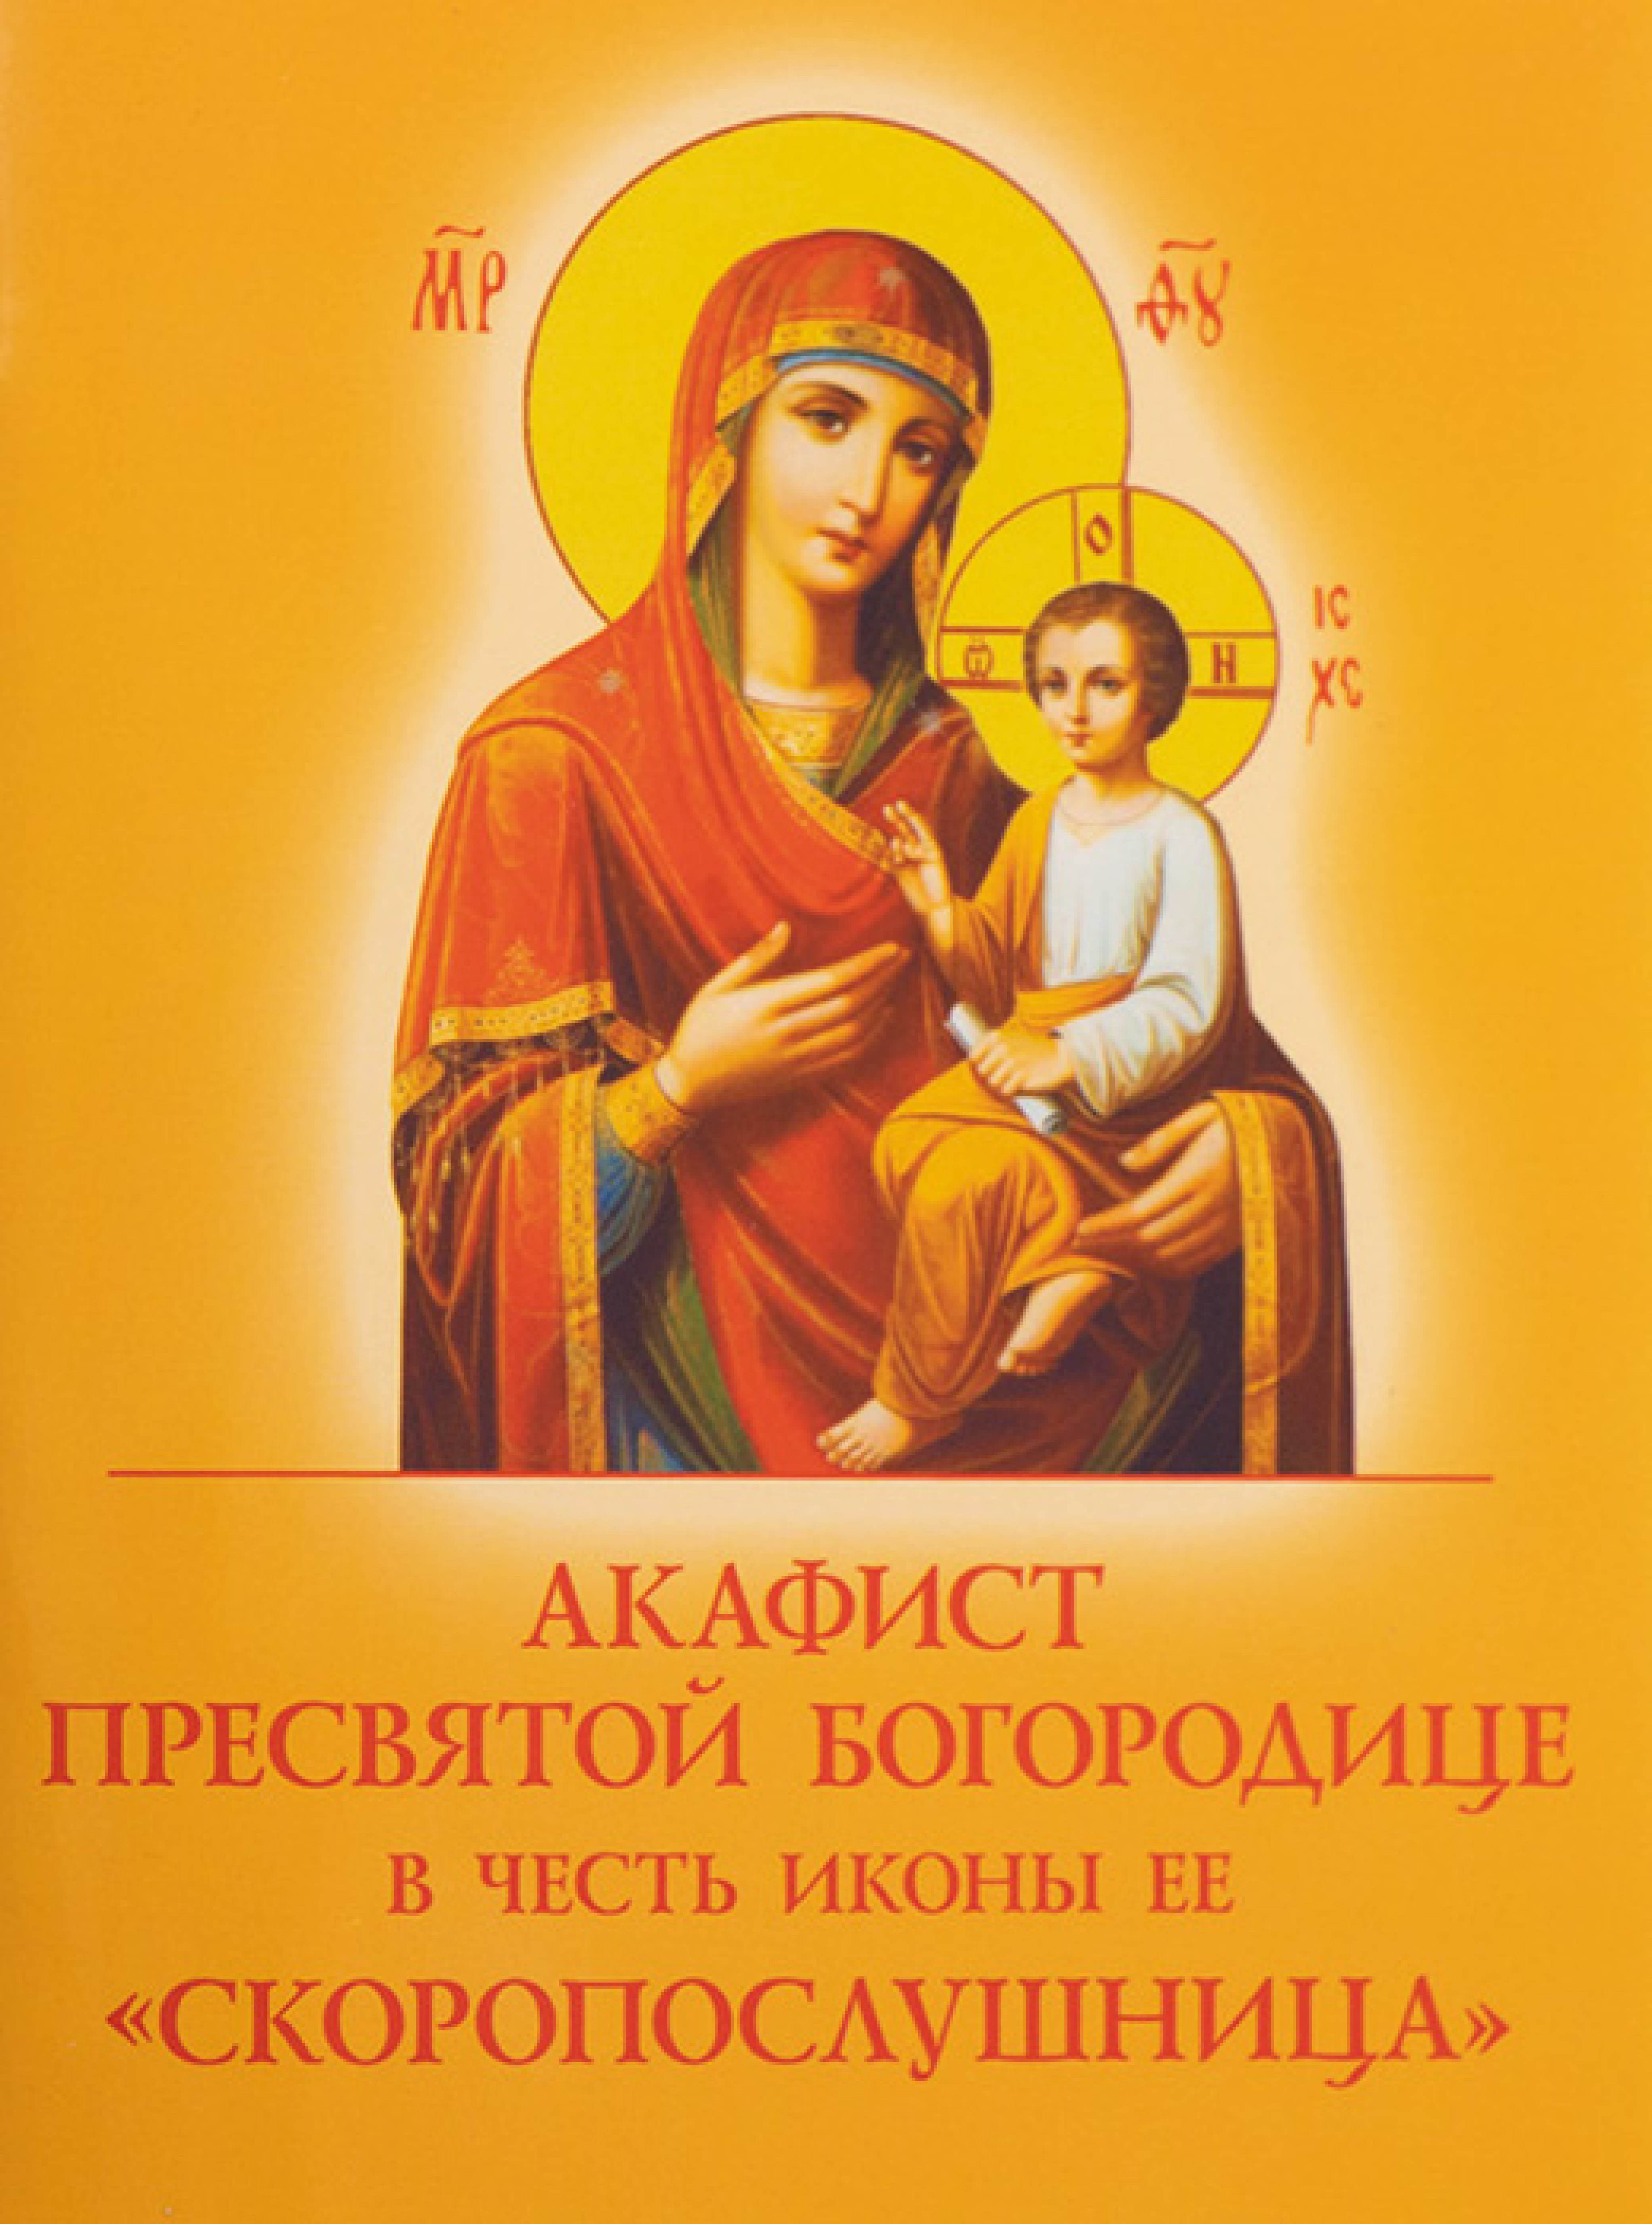 Акафист Пресвятой Богородице в честь иконы Ее "Скоропослушница"